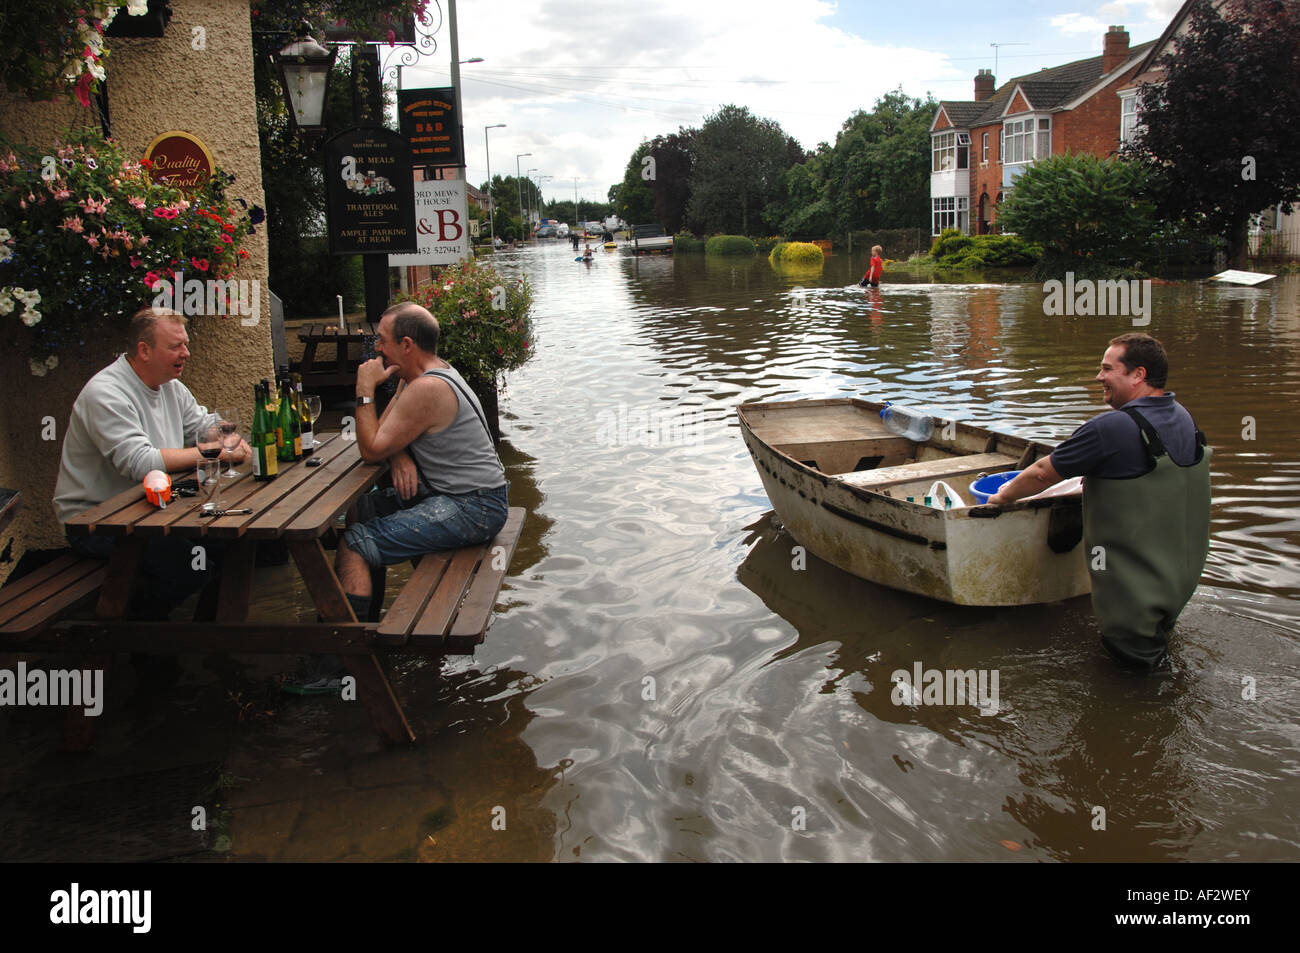 Vermieter des überfluteten Queens Head Pub in Longford Gloucester in England Juli 2007 Wein trinkt und spricht mit einem vorbeifahrenden Boot Stockfoto